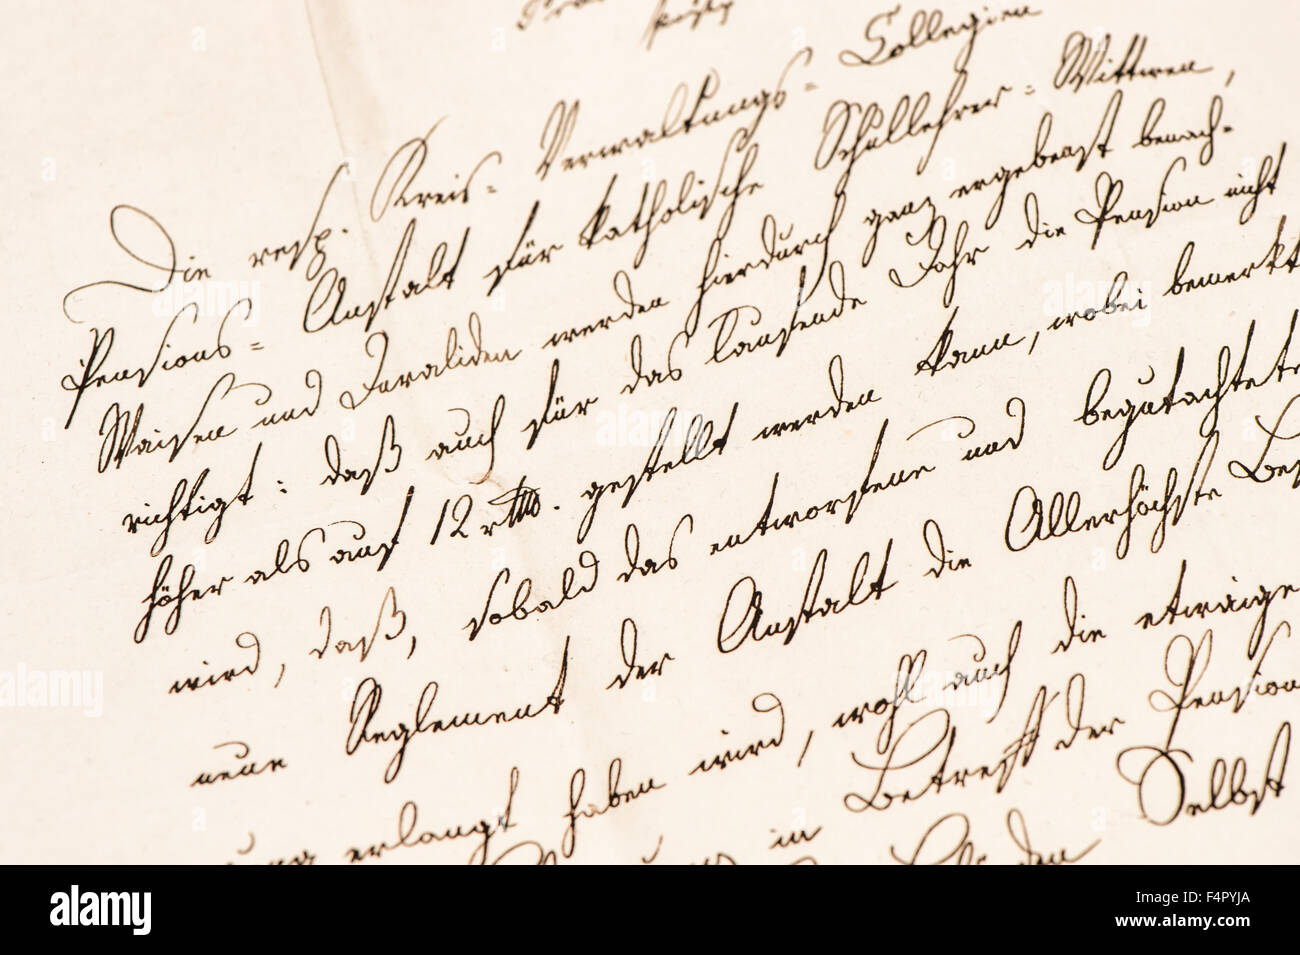 Ancienne lettre avec texte manuscrit non défini. Grunge vintage paper texture background Banque D'Images